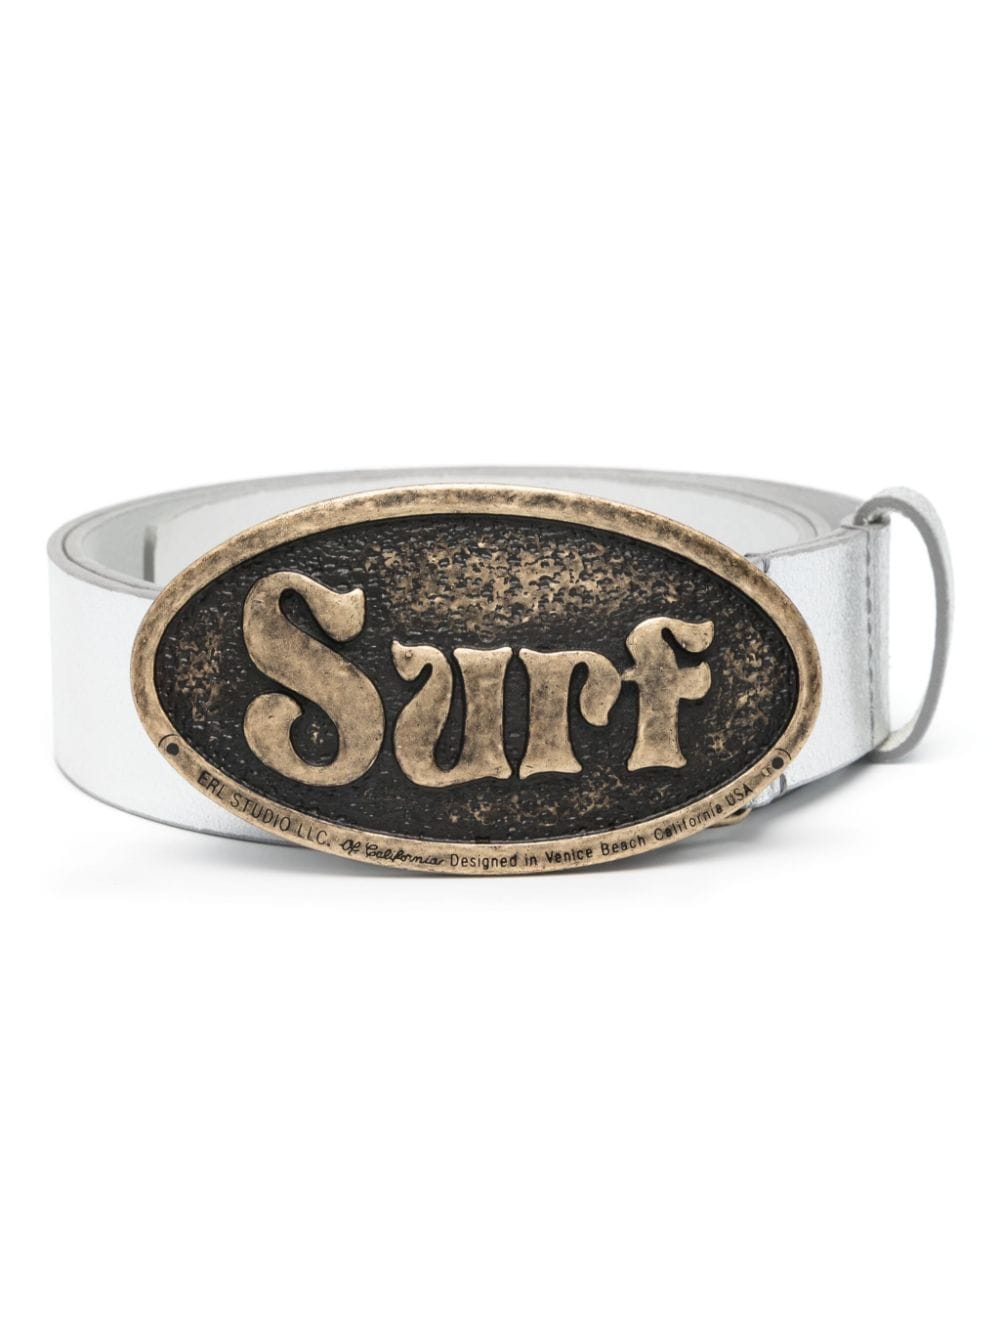 Surf-buckle belt